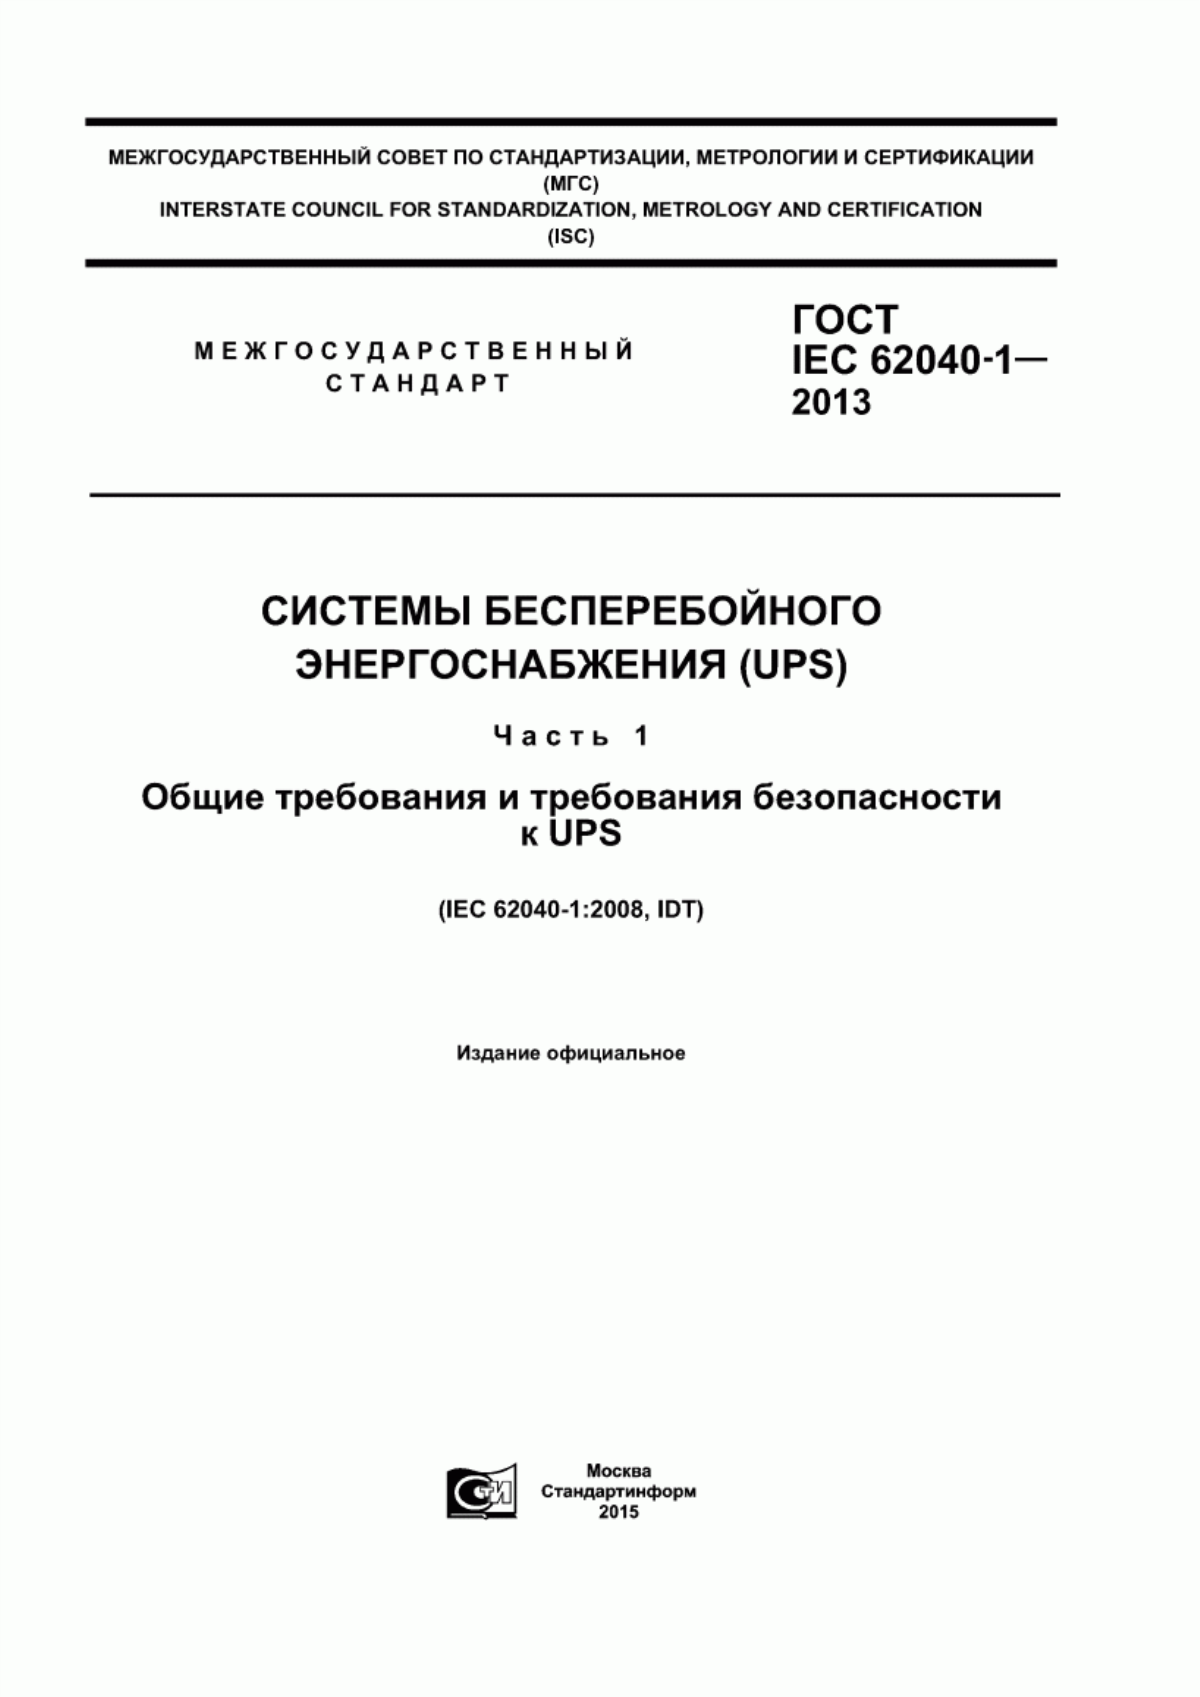 ГОСТ IEC 62040-1-2013 Системы бесперебойного энергоснабжения (UPS). Часть 1. Общие требования и требования безопасности к UPS